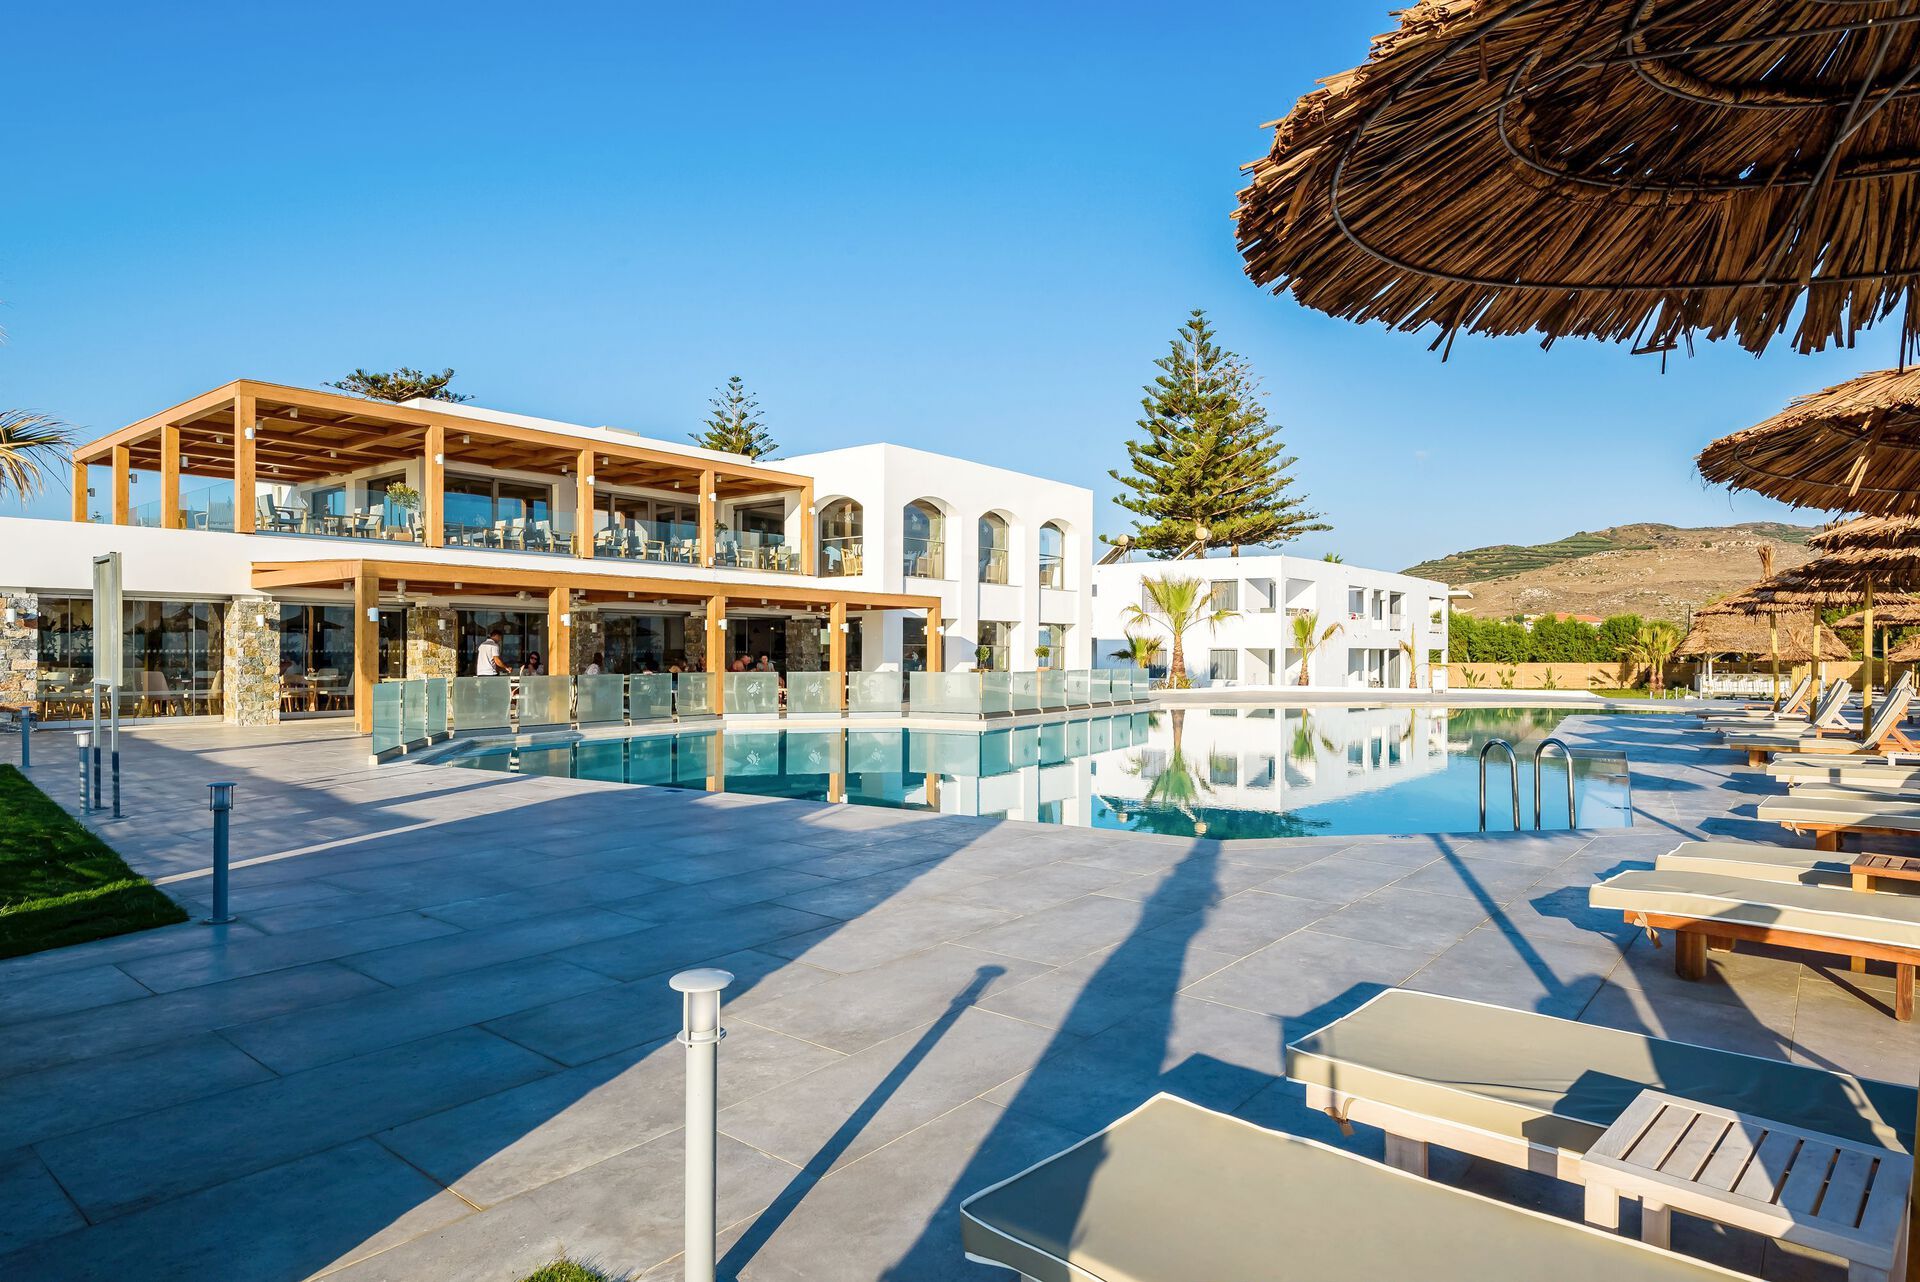 Crète - La Canée - Grèce - Iles grecques - Hotel Solimar White Pearl 4*